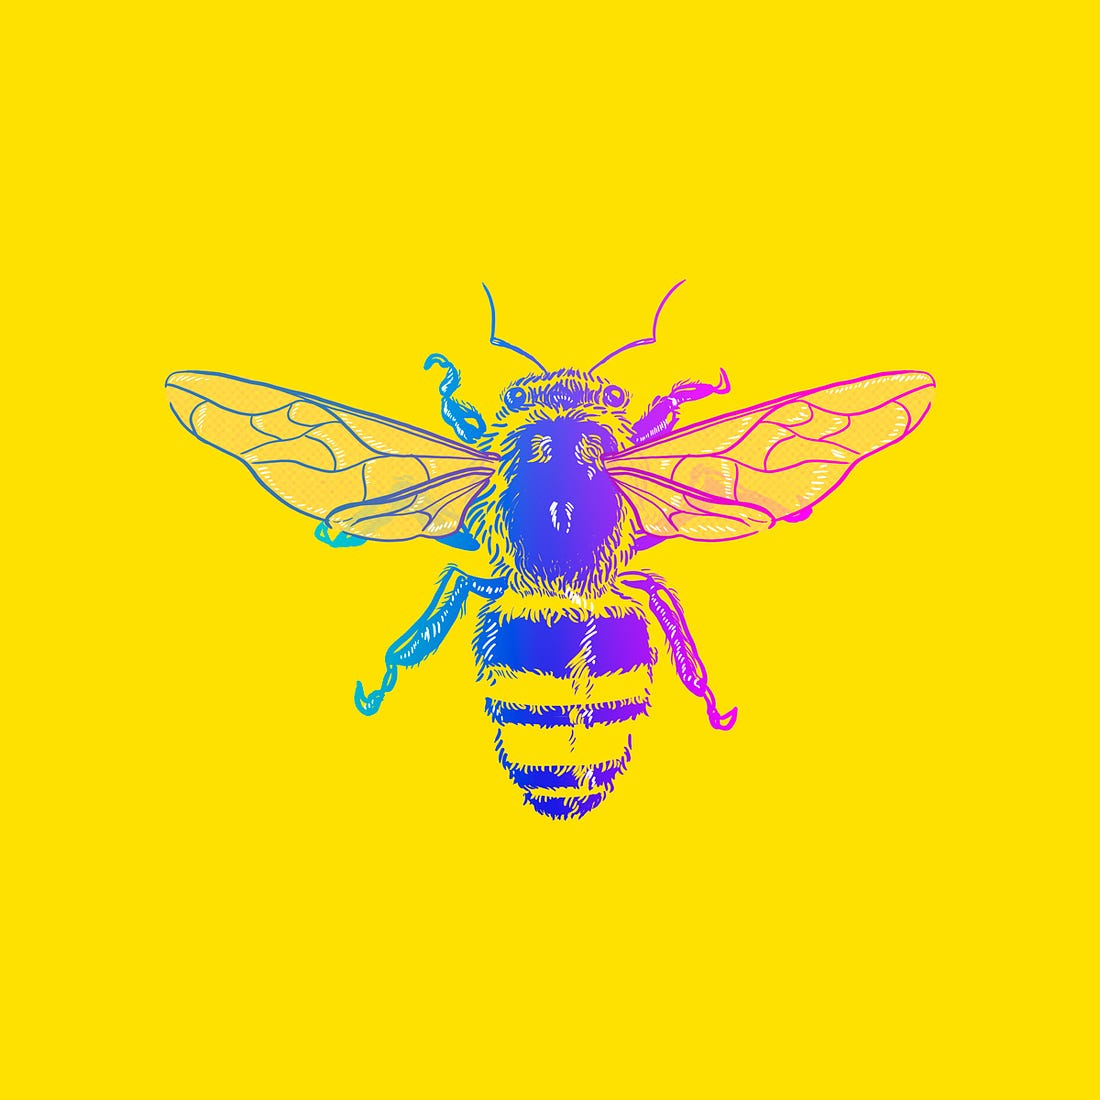 ilustração da capa do podcast: uma abelha com as cores do arco-íris pousada sobre um fundo amarelo vibrante